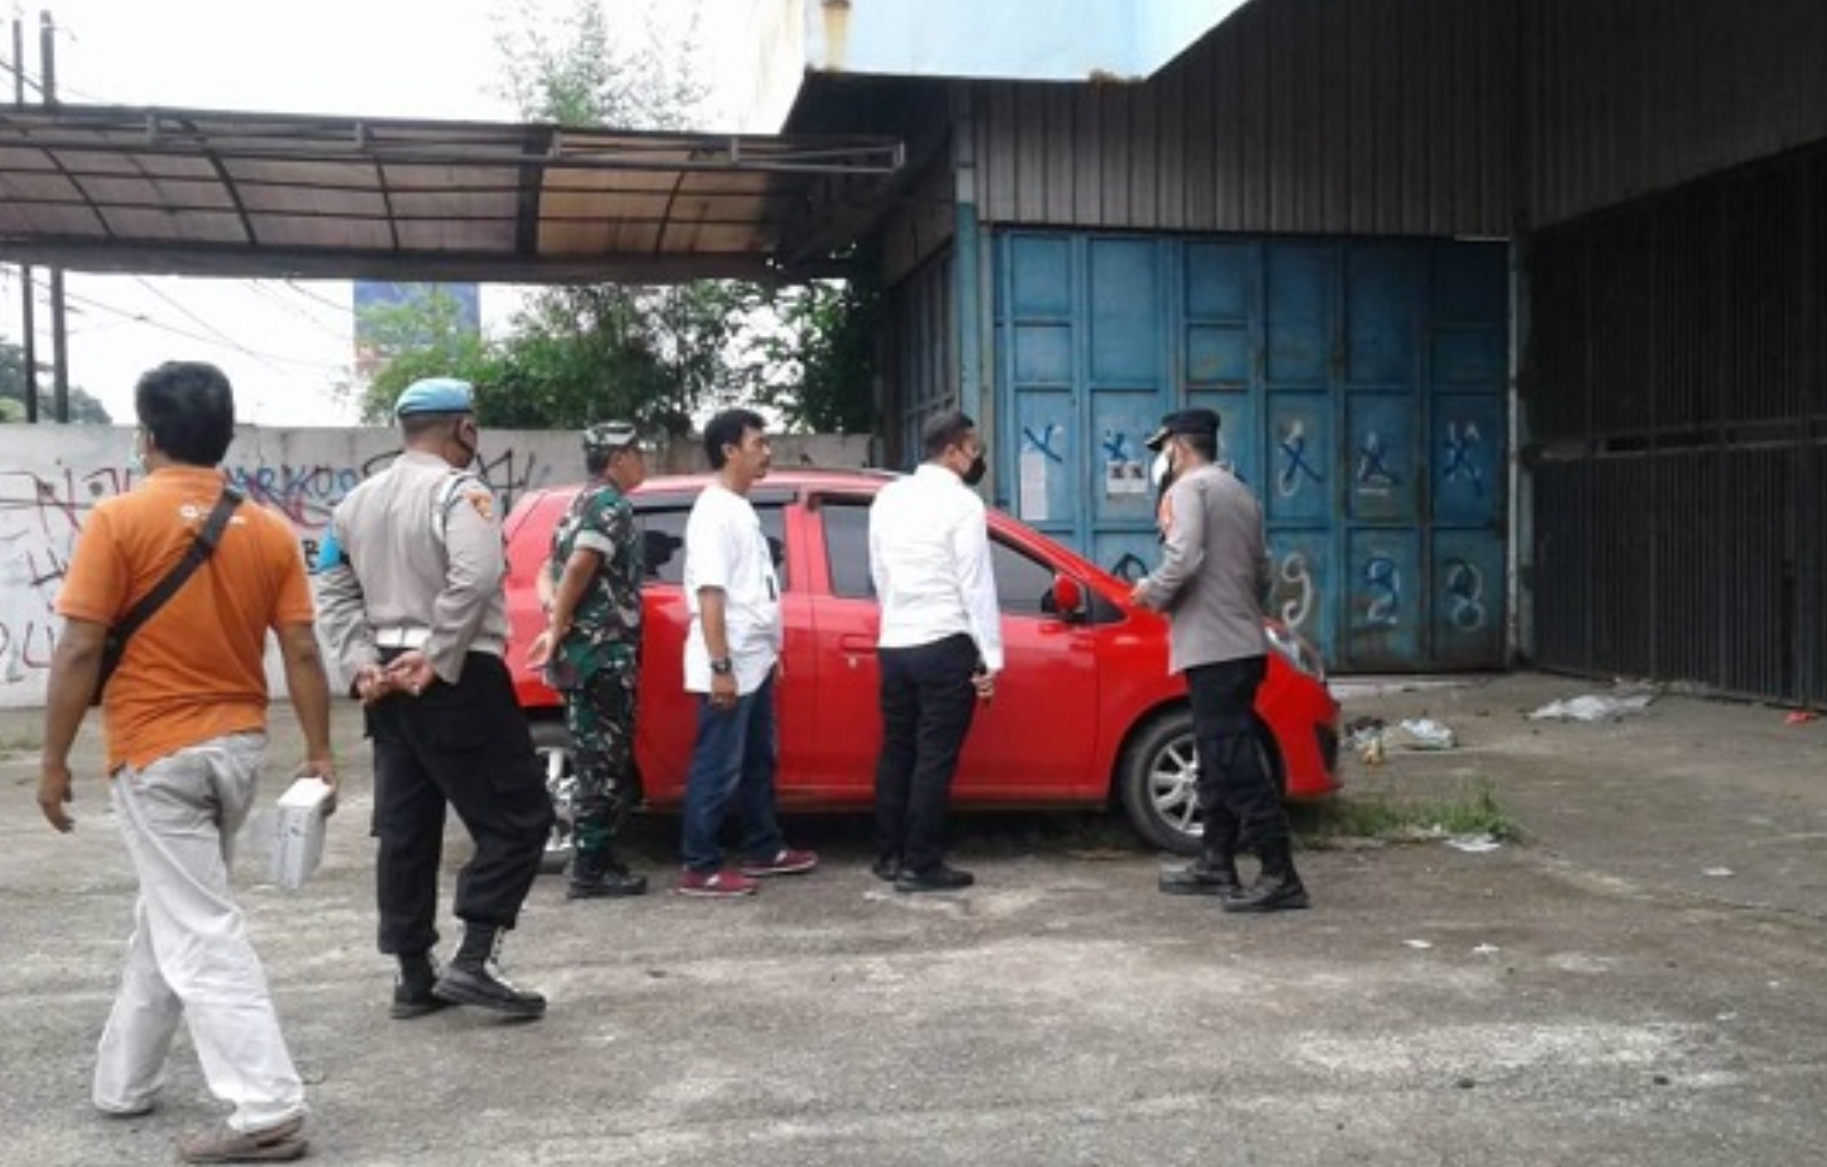 5 Fakta Suami Bunuh Istri di Cirebon, Terkuaknya Mayat Wanita Berambut Merah di Mobil Ayla